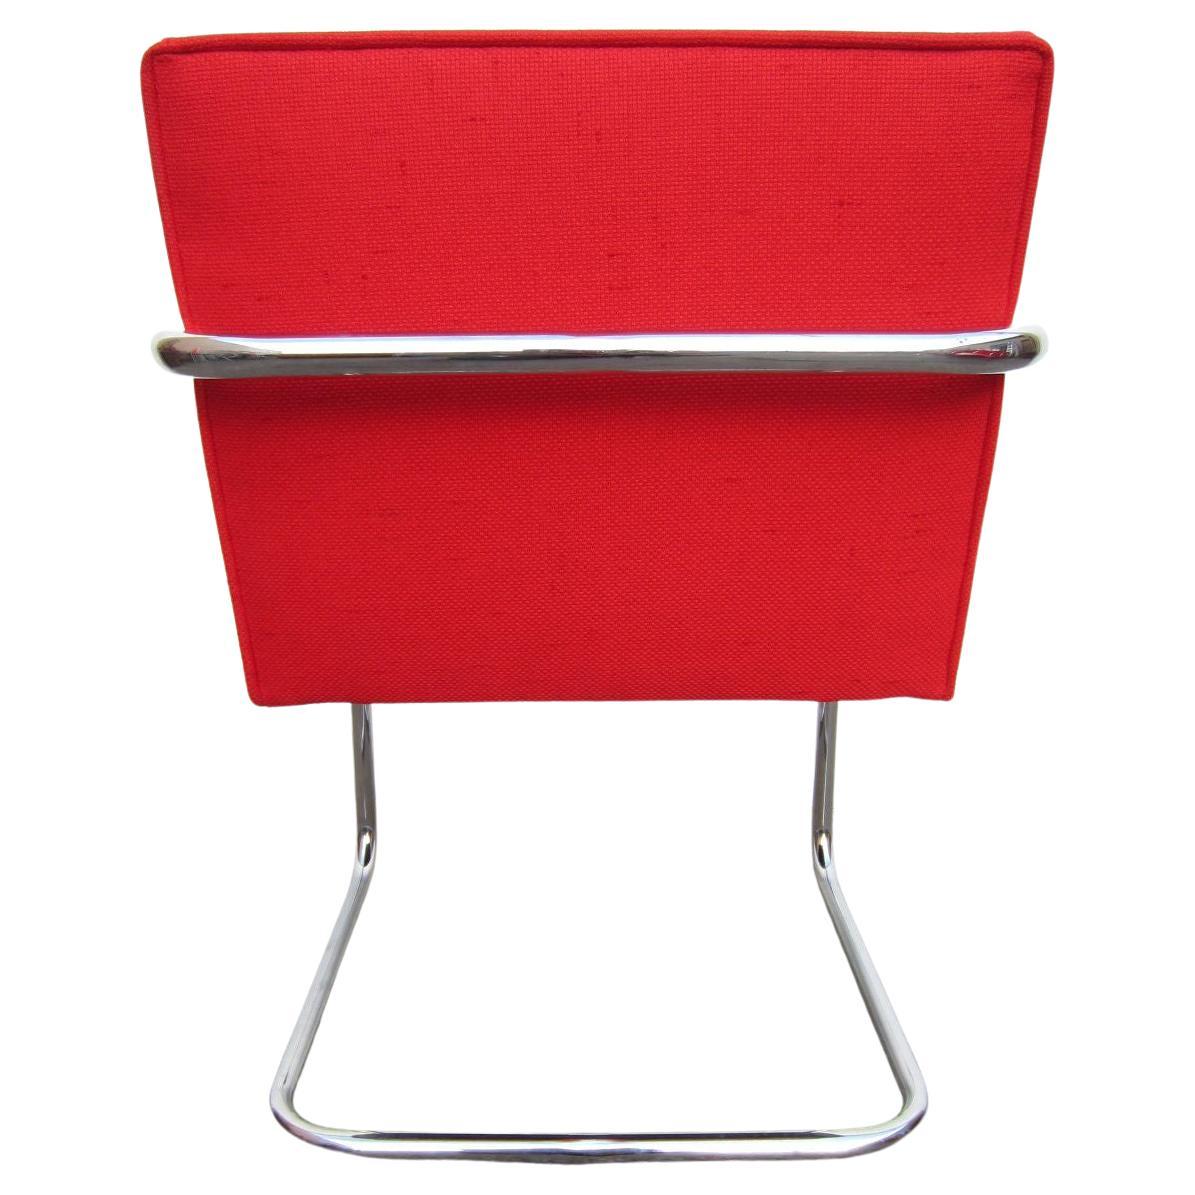 Sauberer Satz von 10 freischwingenden Brünnchen-Stühlen aus Chromstahlrohr, entworfen von Ludwig Mies van der Rohe.
Möglicherweise Knoll, aber die Etiketten der Hersteller waren nicht vorhanden, als wir gekauft haben.
Sehr gute Qualität mit tiefem